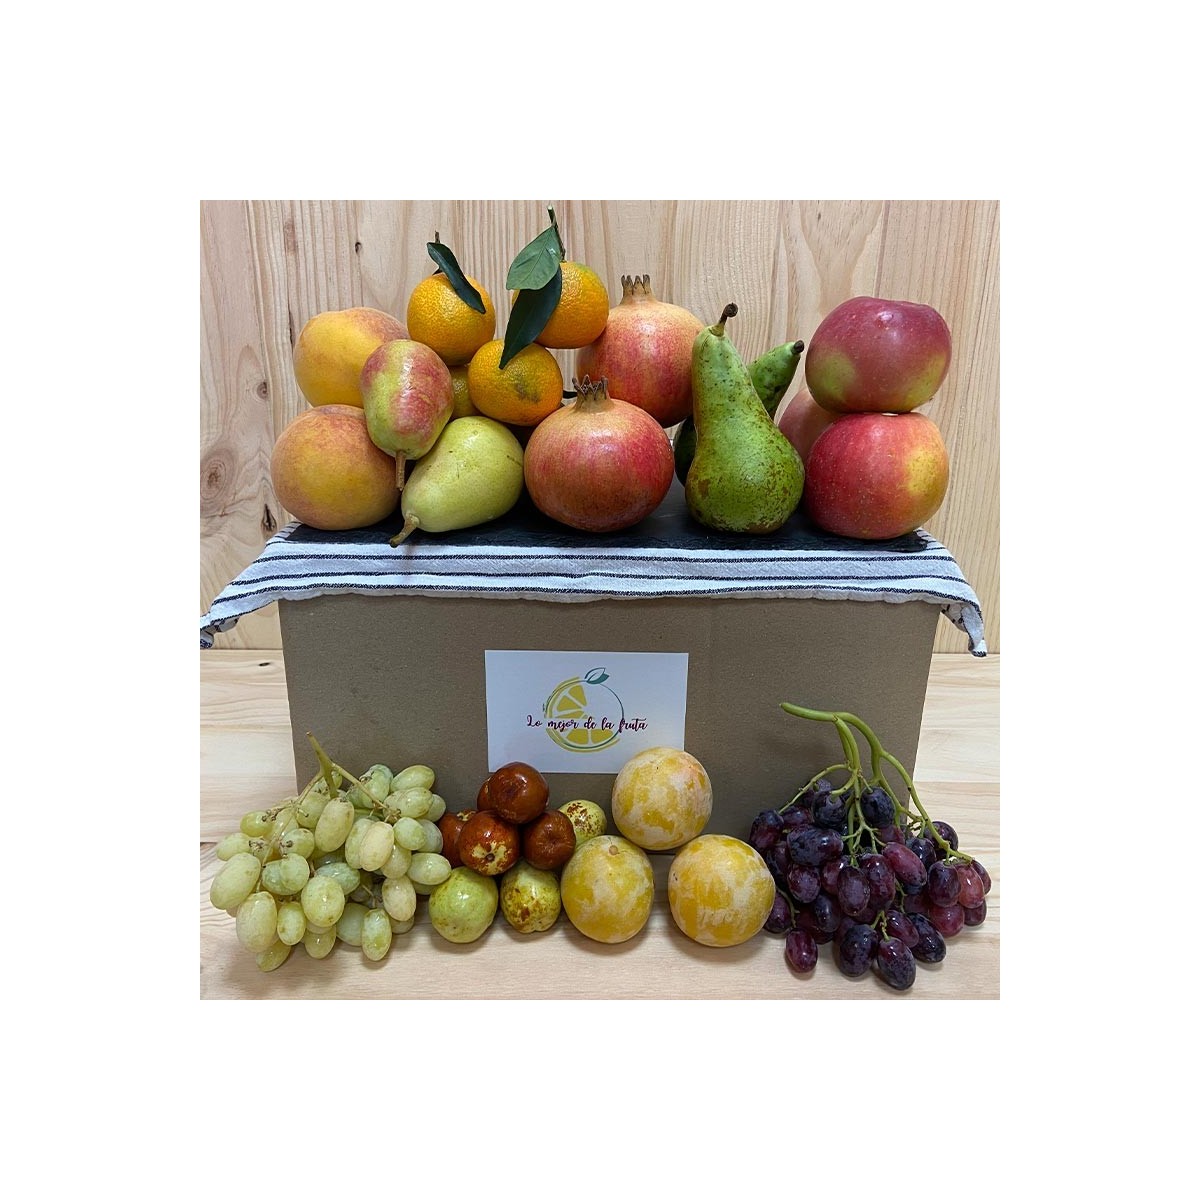 Pack Frutas Octubre - Packs Frutas y Verduras -1- Lo mejor de la fruta